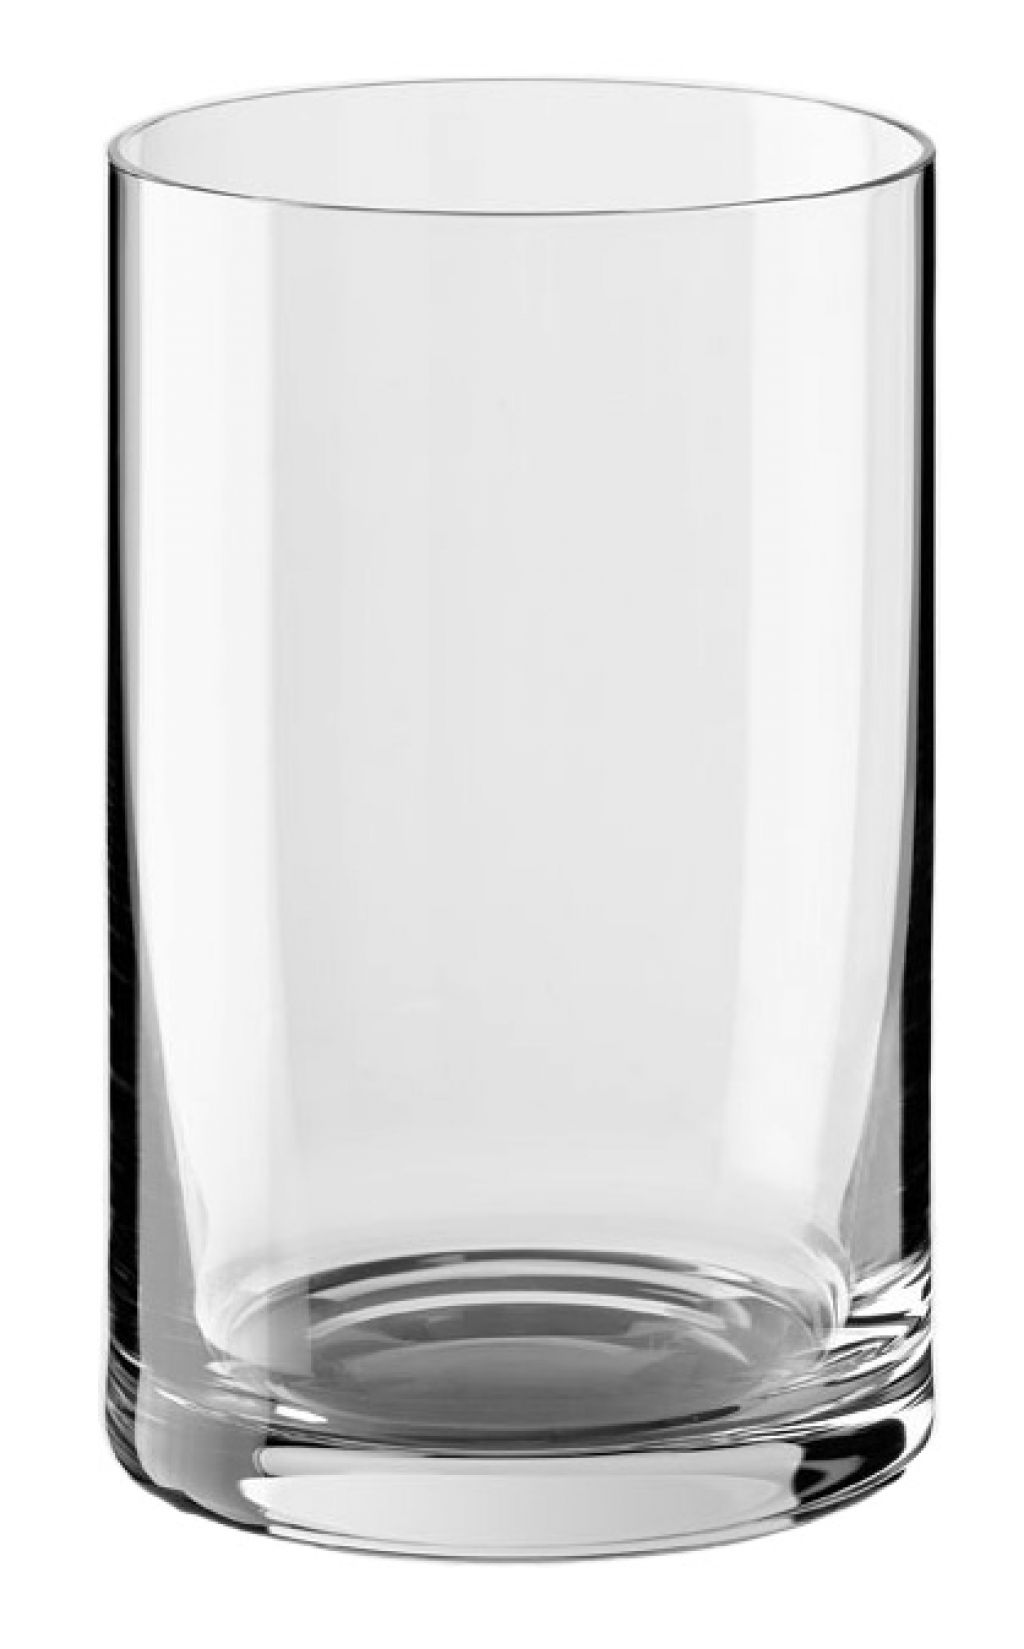 Como llenar un vaso con agua? (Tutorial) - Taringa!